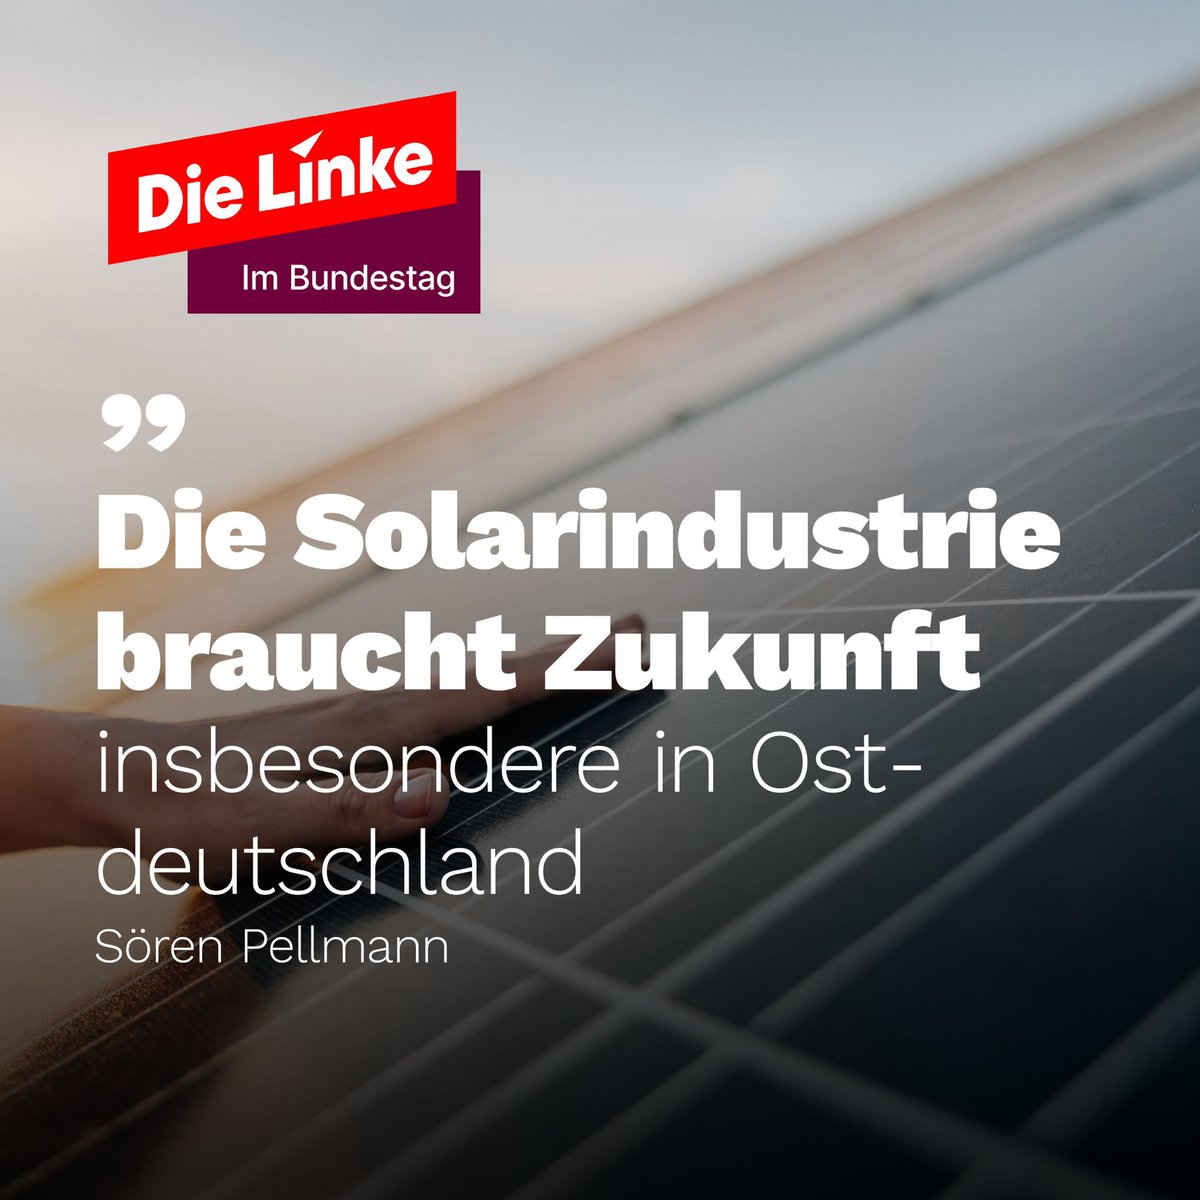 Das bevorstehende Solarpaket bedroht die ostdeutsche Solarindustrie. Die Flut von subventionierten Produkten aus China wird unweigerlich zum Verlust der Bedeutung des Industriezweiges führen.Dabei sollten Wirtschaft und Arbeitsplätze in Ostdeutschland entscheidende Faktoren für